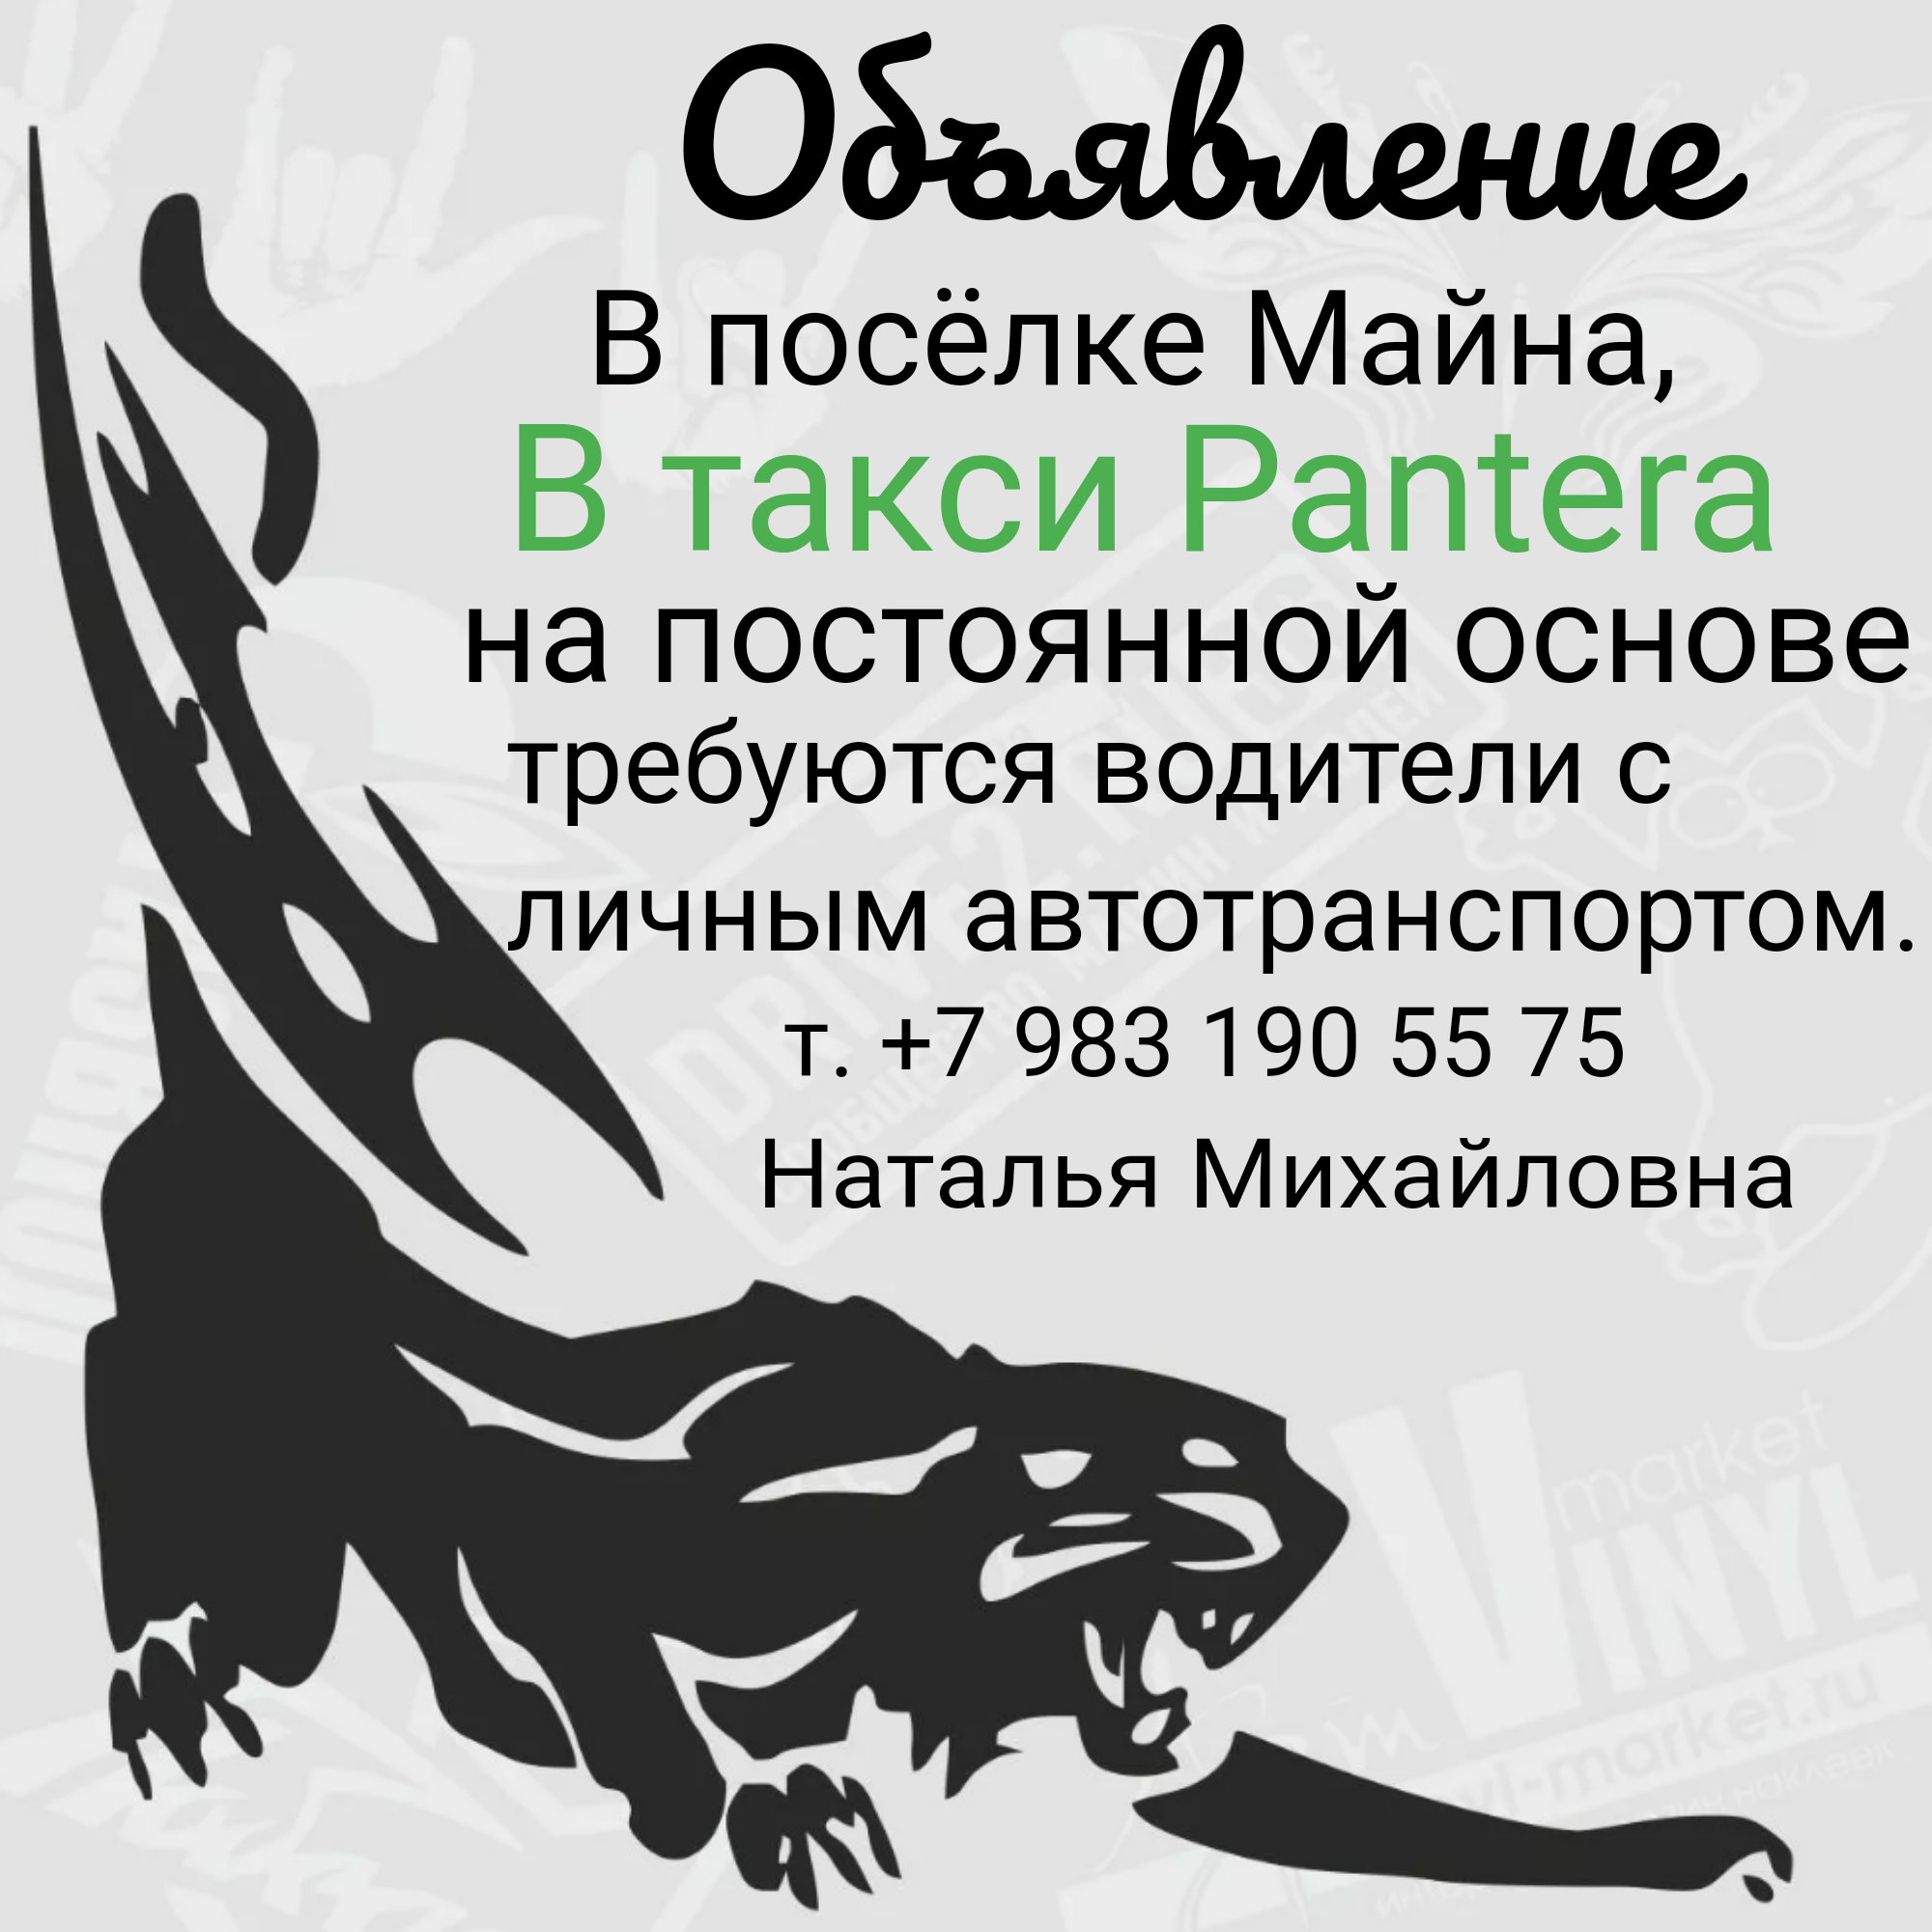 Саяногорск Инфо - logo3_5_6263.jpeg, Скачано: 53